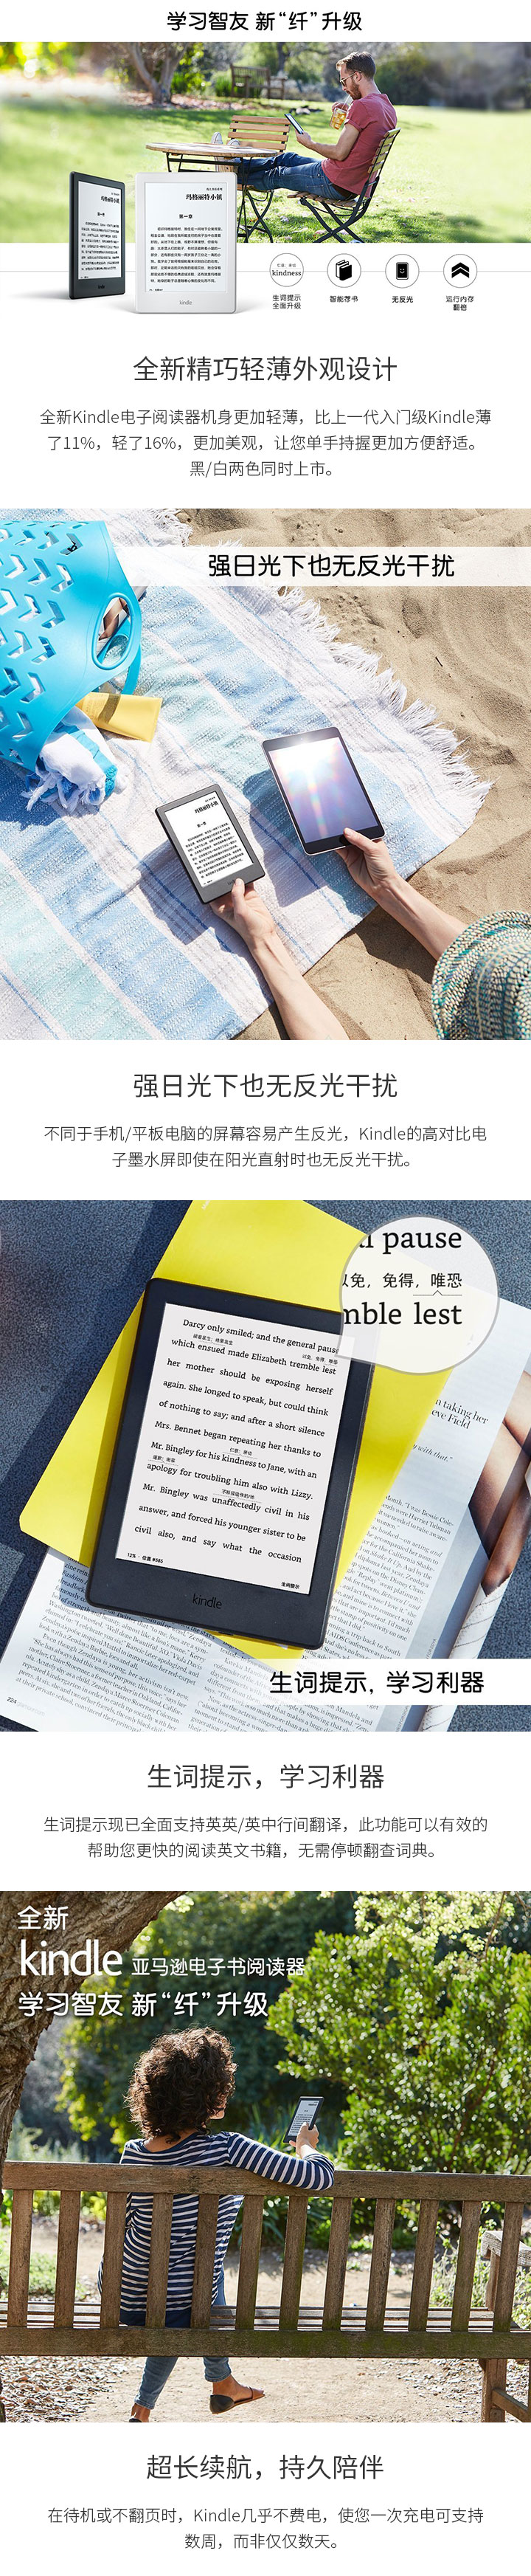 全新Kindle电子书阅读器免费试用,评测